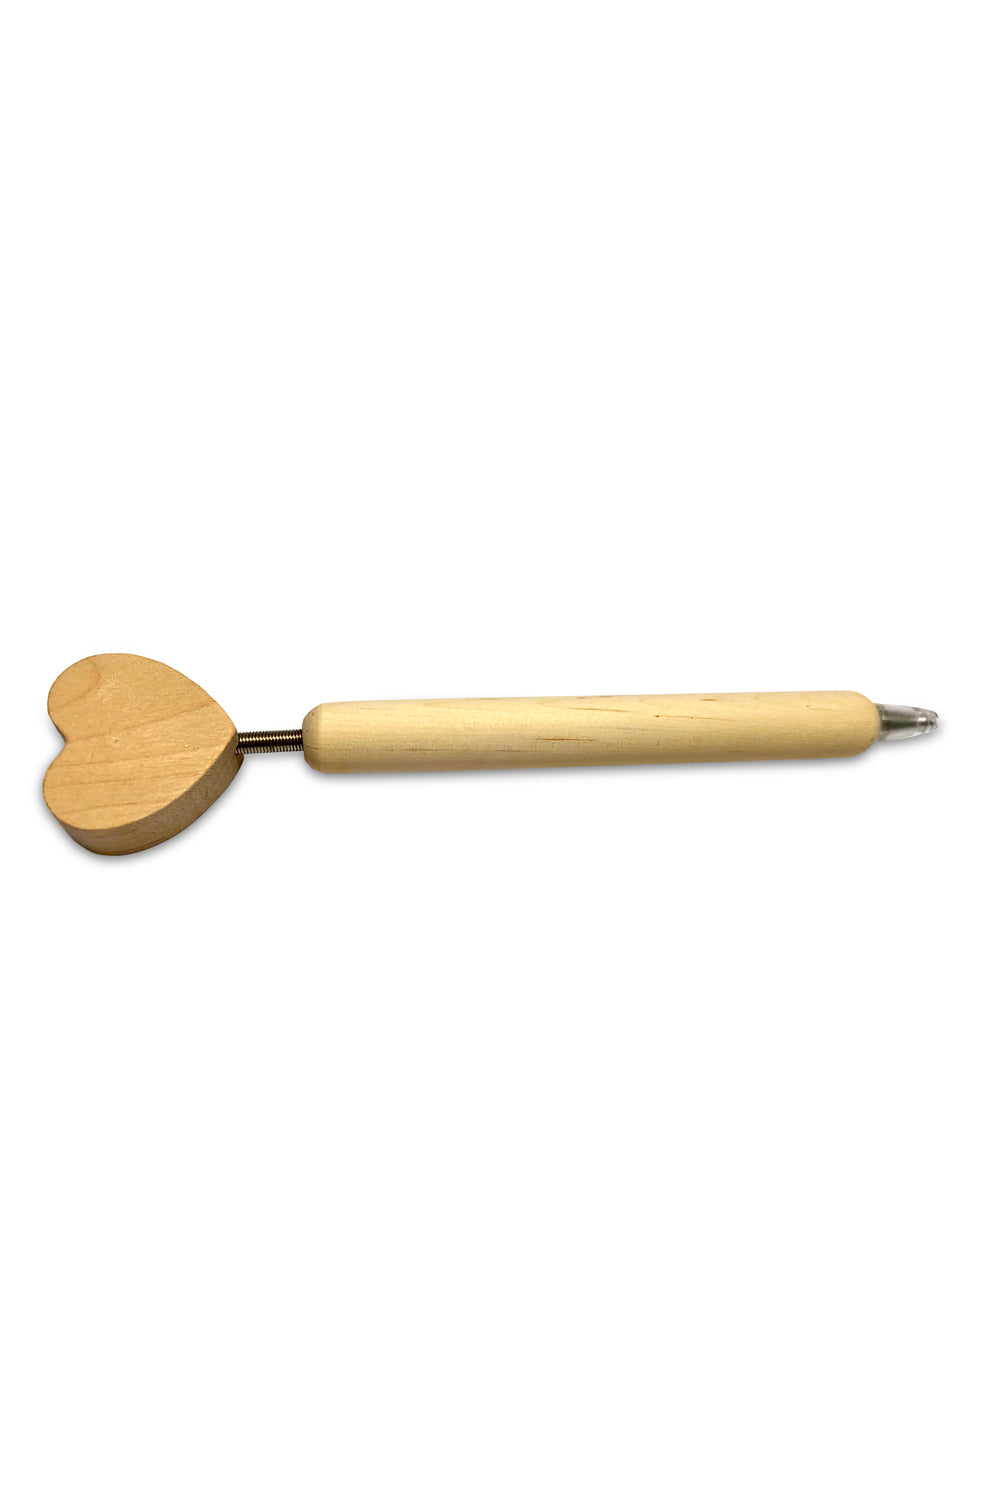 Der schoene Herz Kugelschreiber ist aus Lotus Holz und hat somit einen natuerlichen Look. Der Holzschreiber ist auch perfekt zum Anmalen und selbst kreieren! 